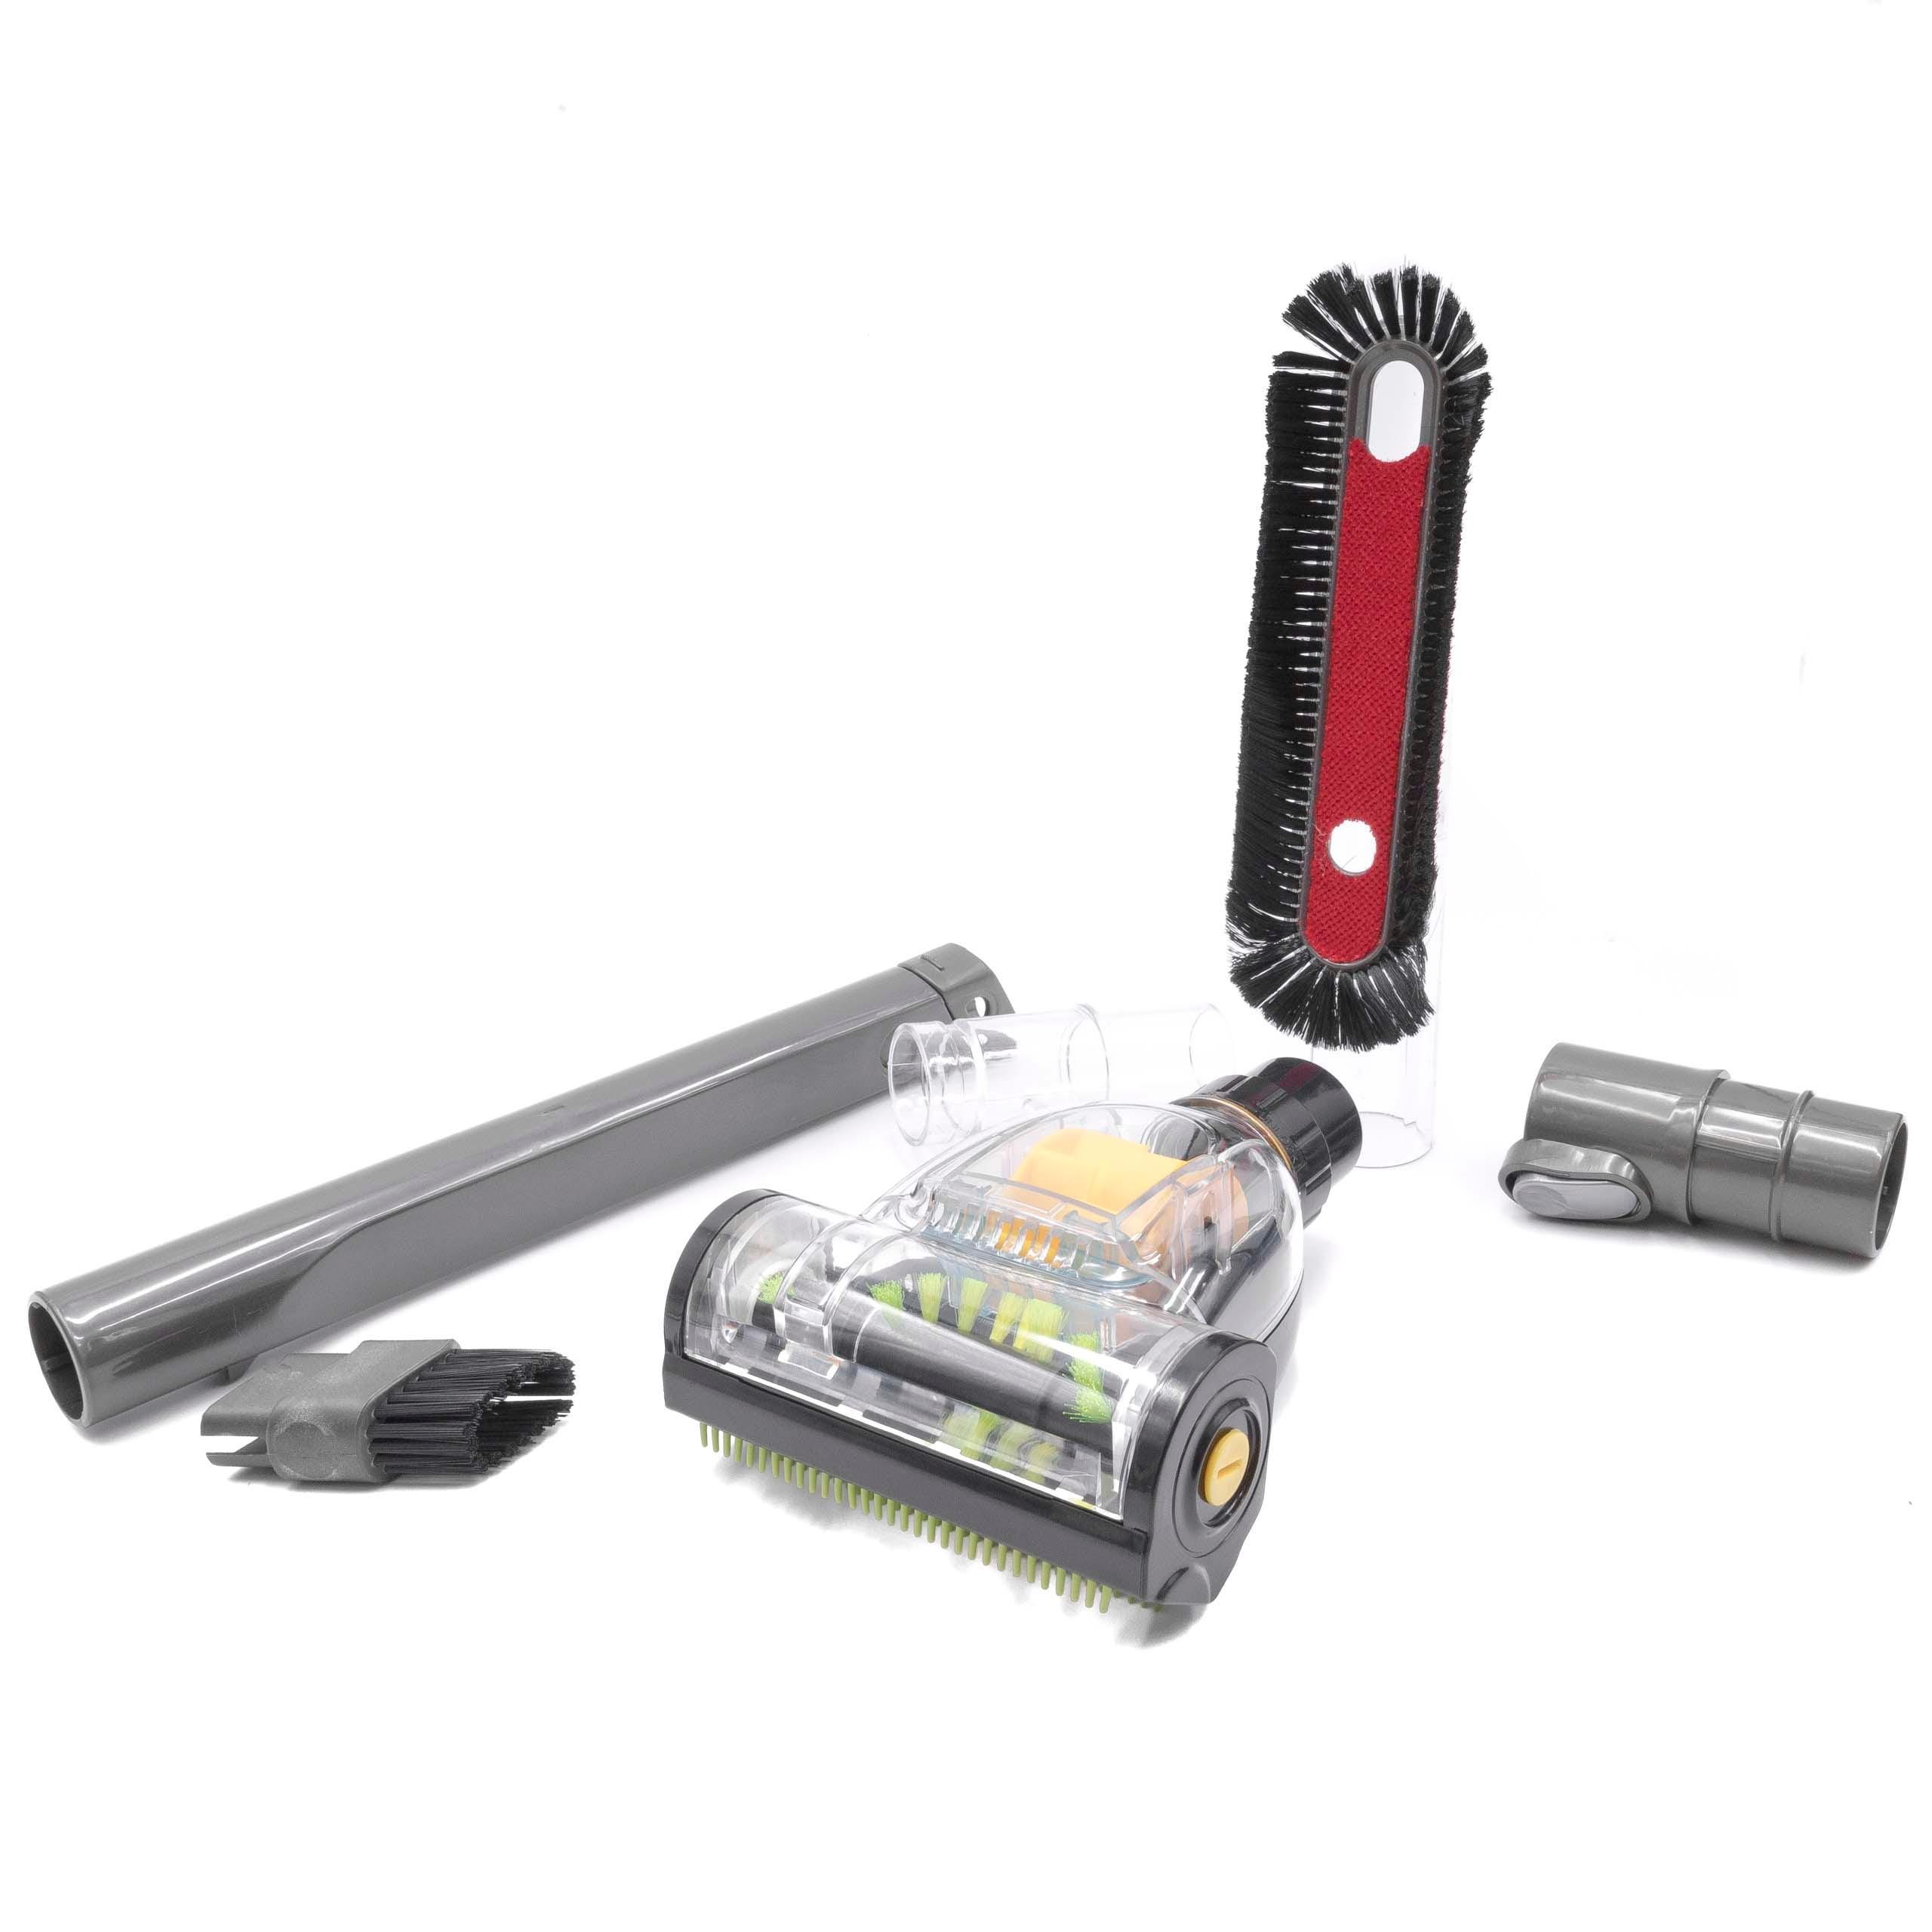 Vhbw set d'accessoires pour aspirateur compatible avec Dyson et aspirateur  avec un embout, buse, adaptateur de 32mm